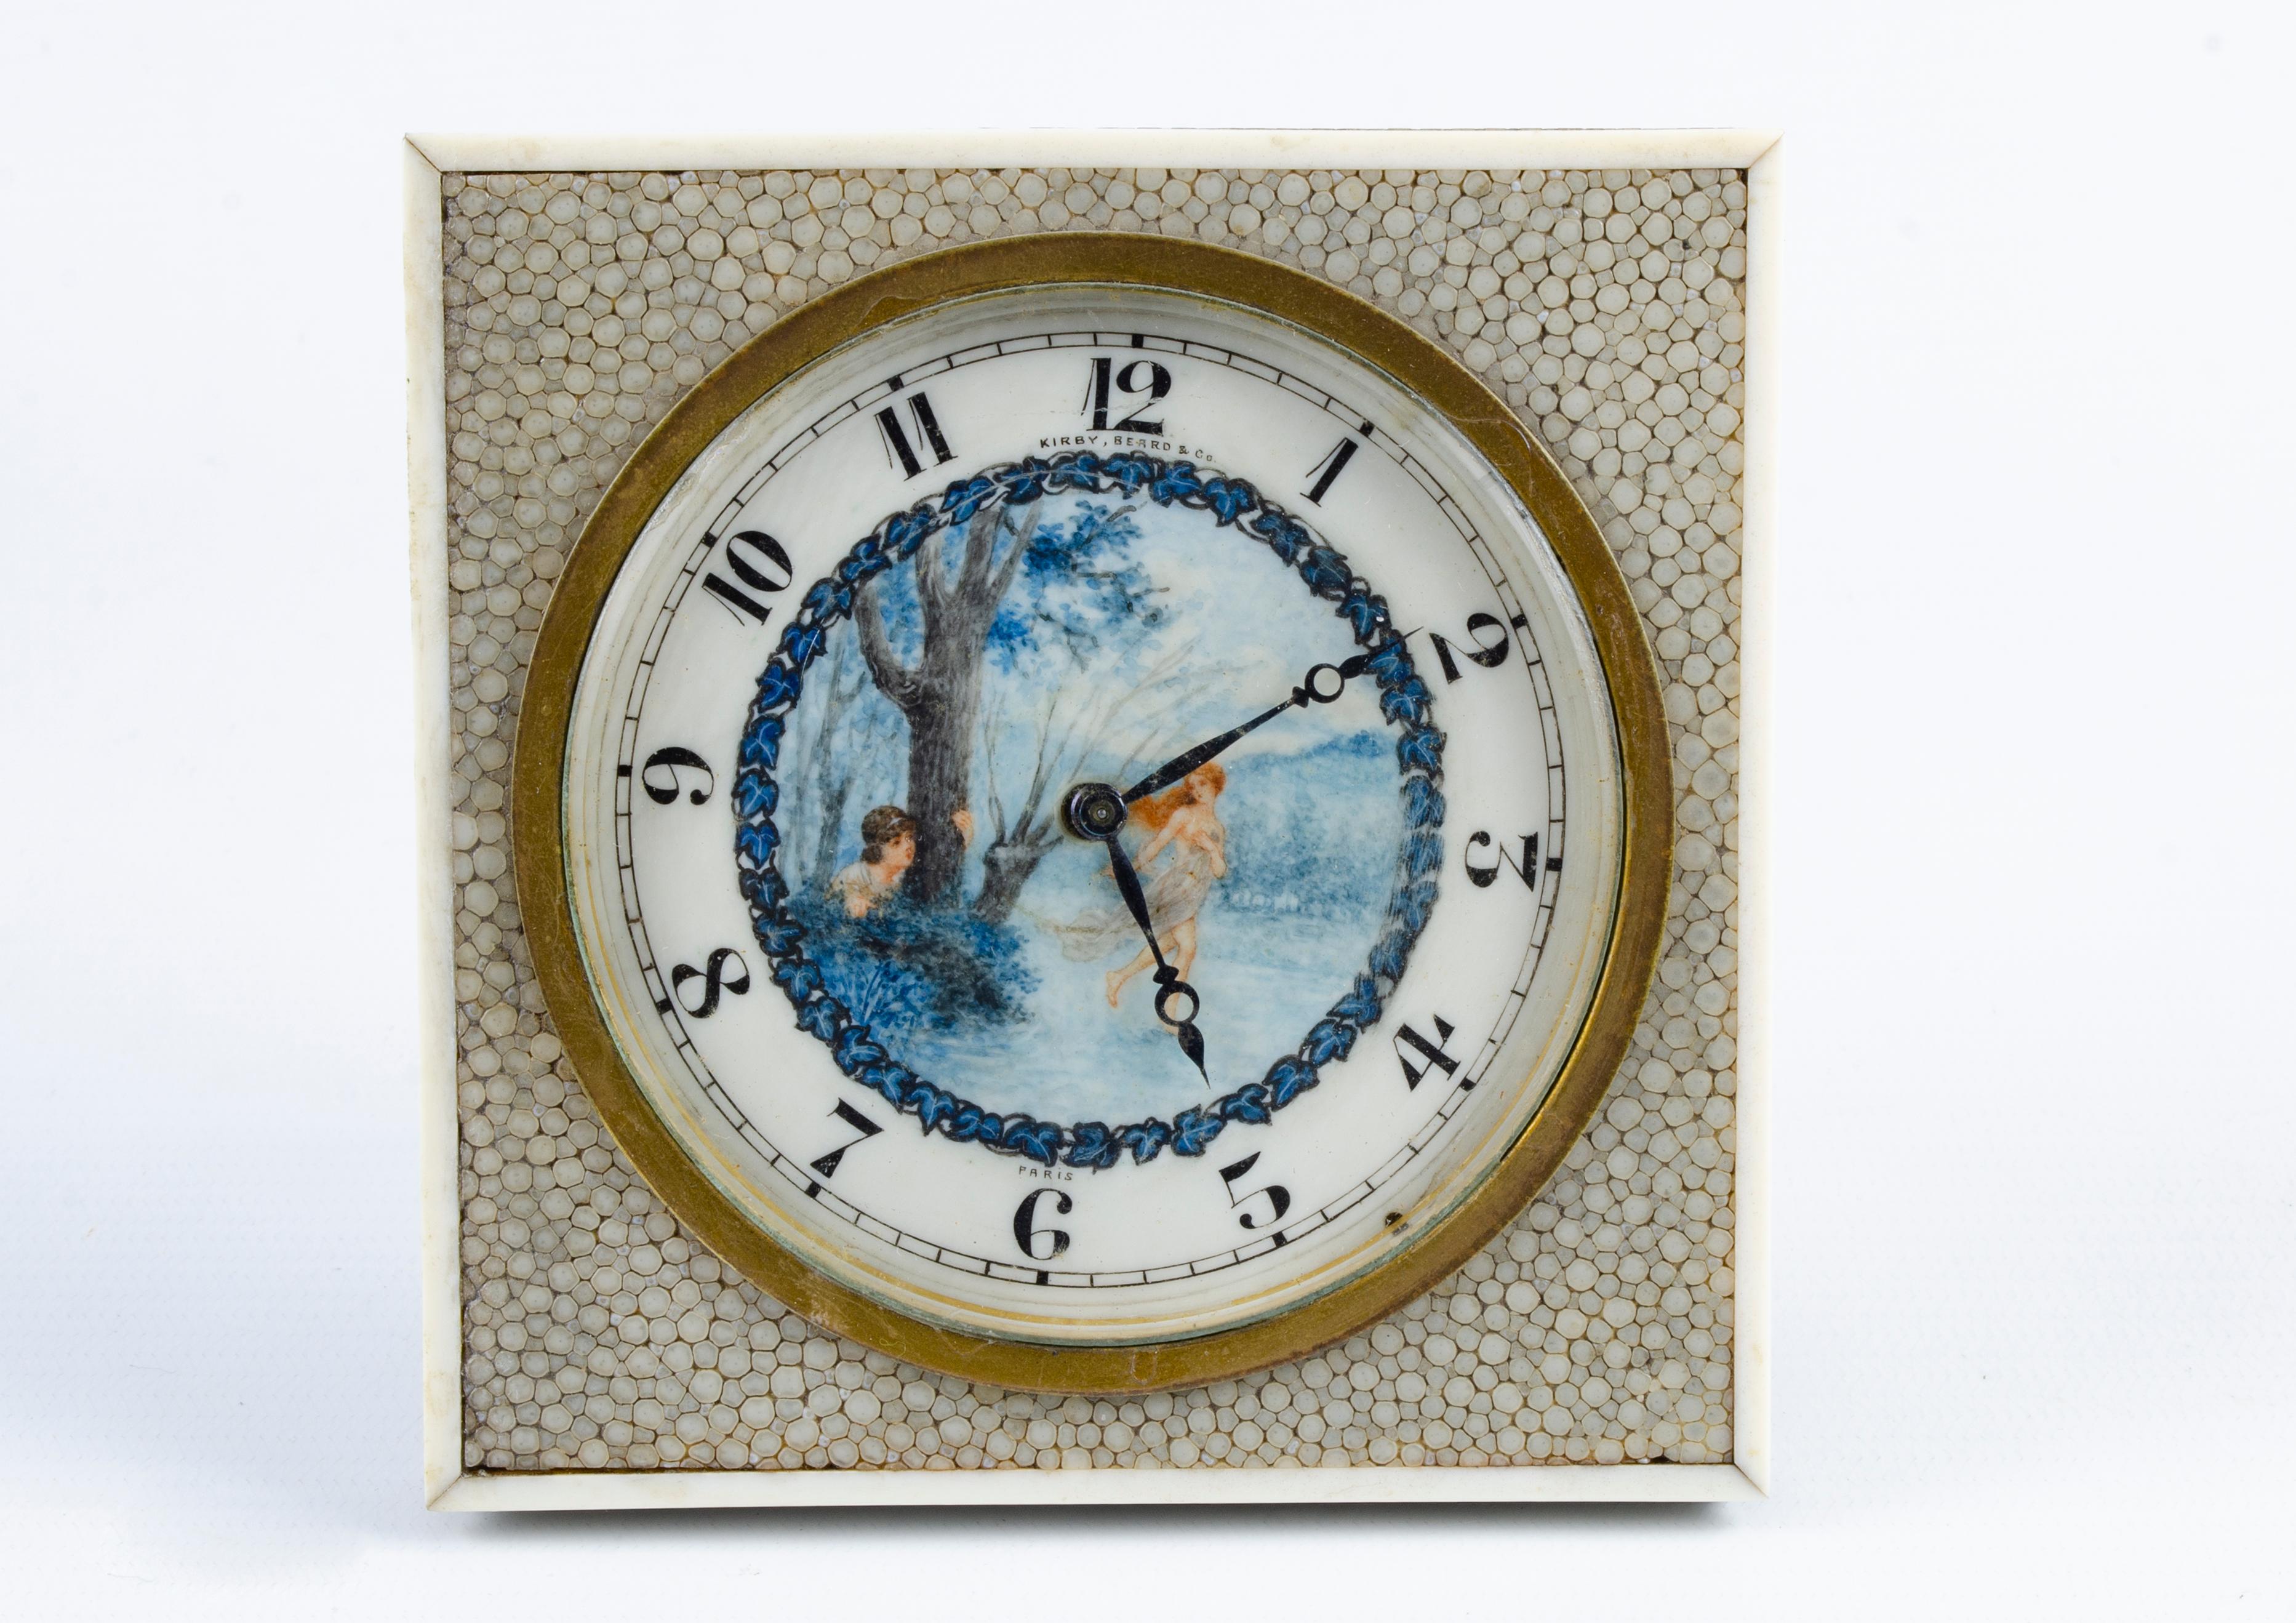 Horloge de table Art Déco
MATERIAL : Galuchat et bronze
Origine française Circa 1920
Au centre, il y a une peinture originale (Scène voyante).
Marque sur le cadran (Kirby Beard and Co Paris).